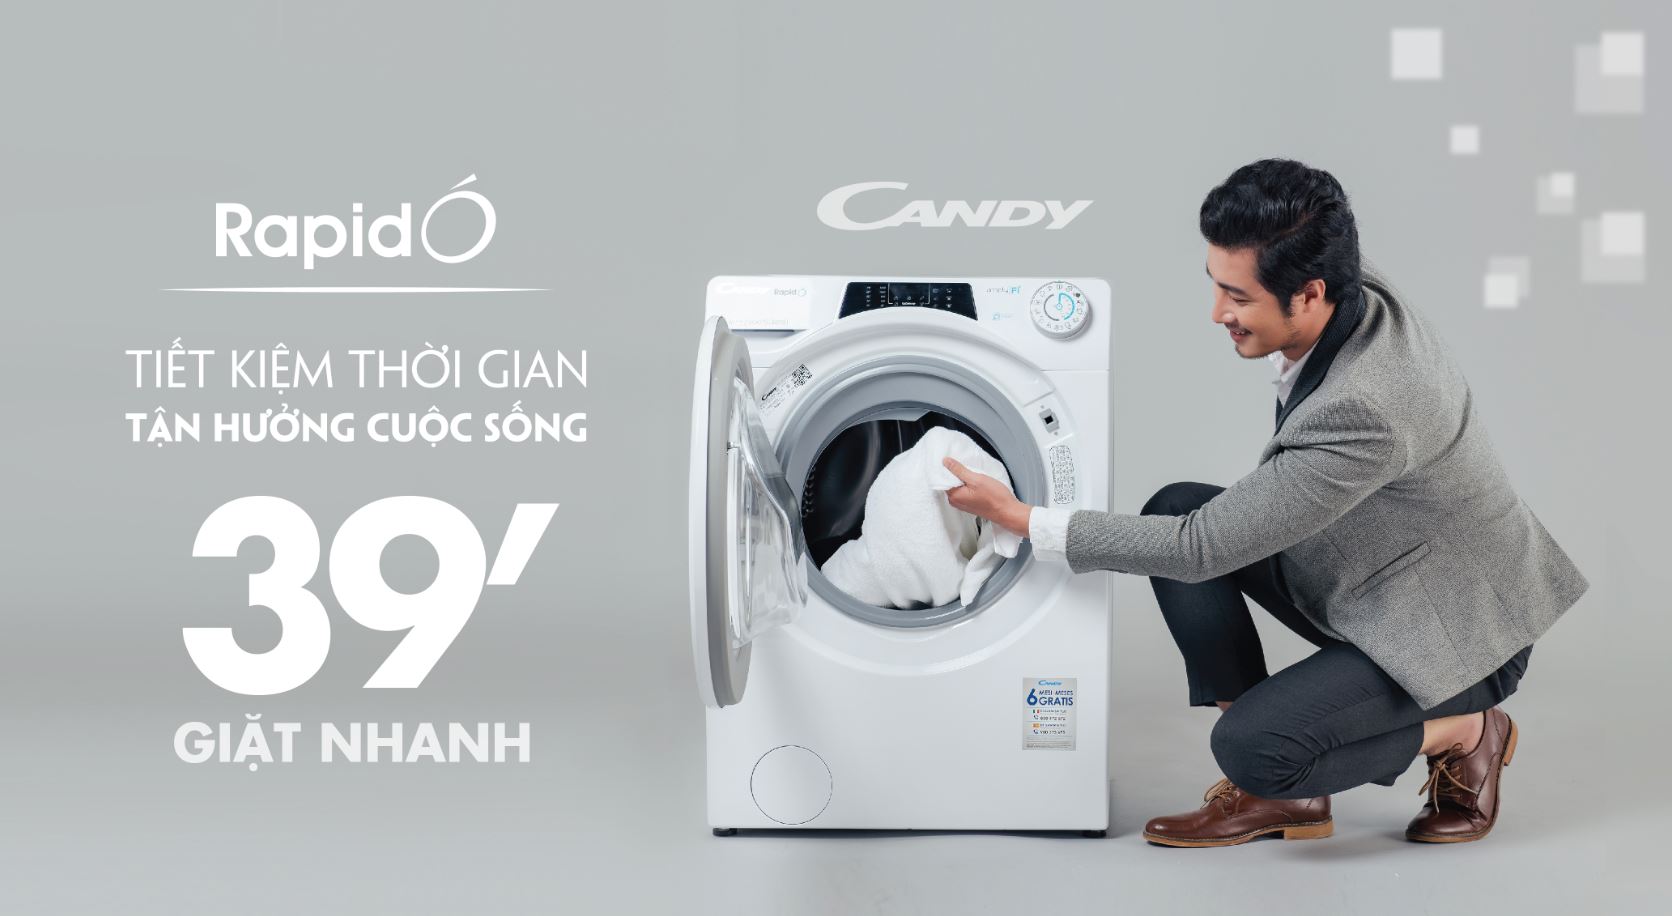 Candy ra mắt dòng máy giặt mới Rapido’ tại Việt Nam, giá từ 8.8 triệu đồng